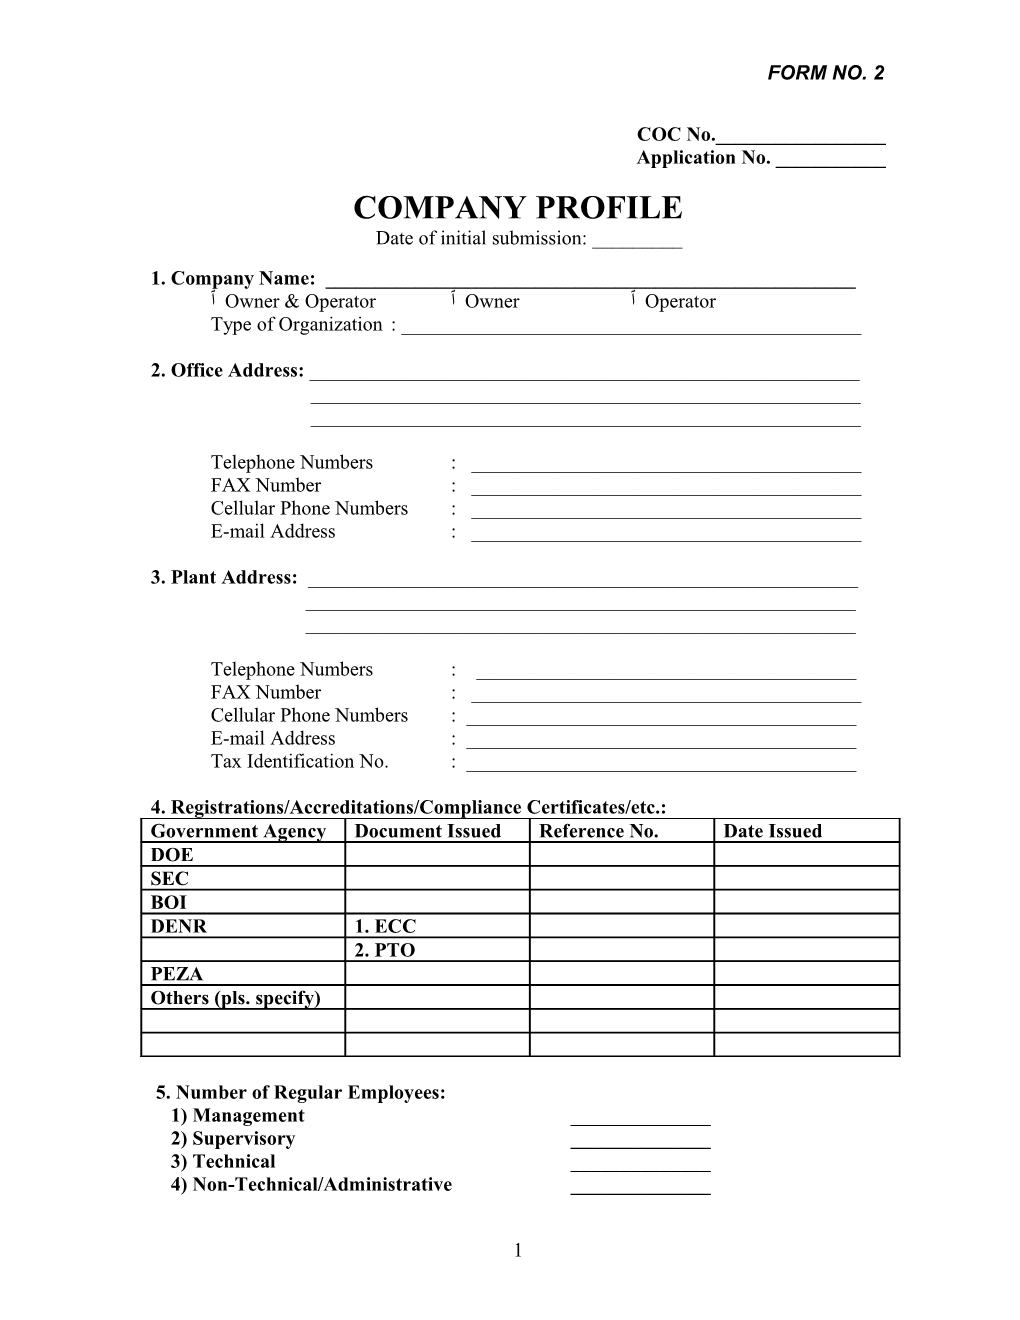 Company Profile s1